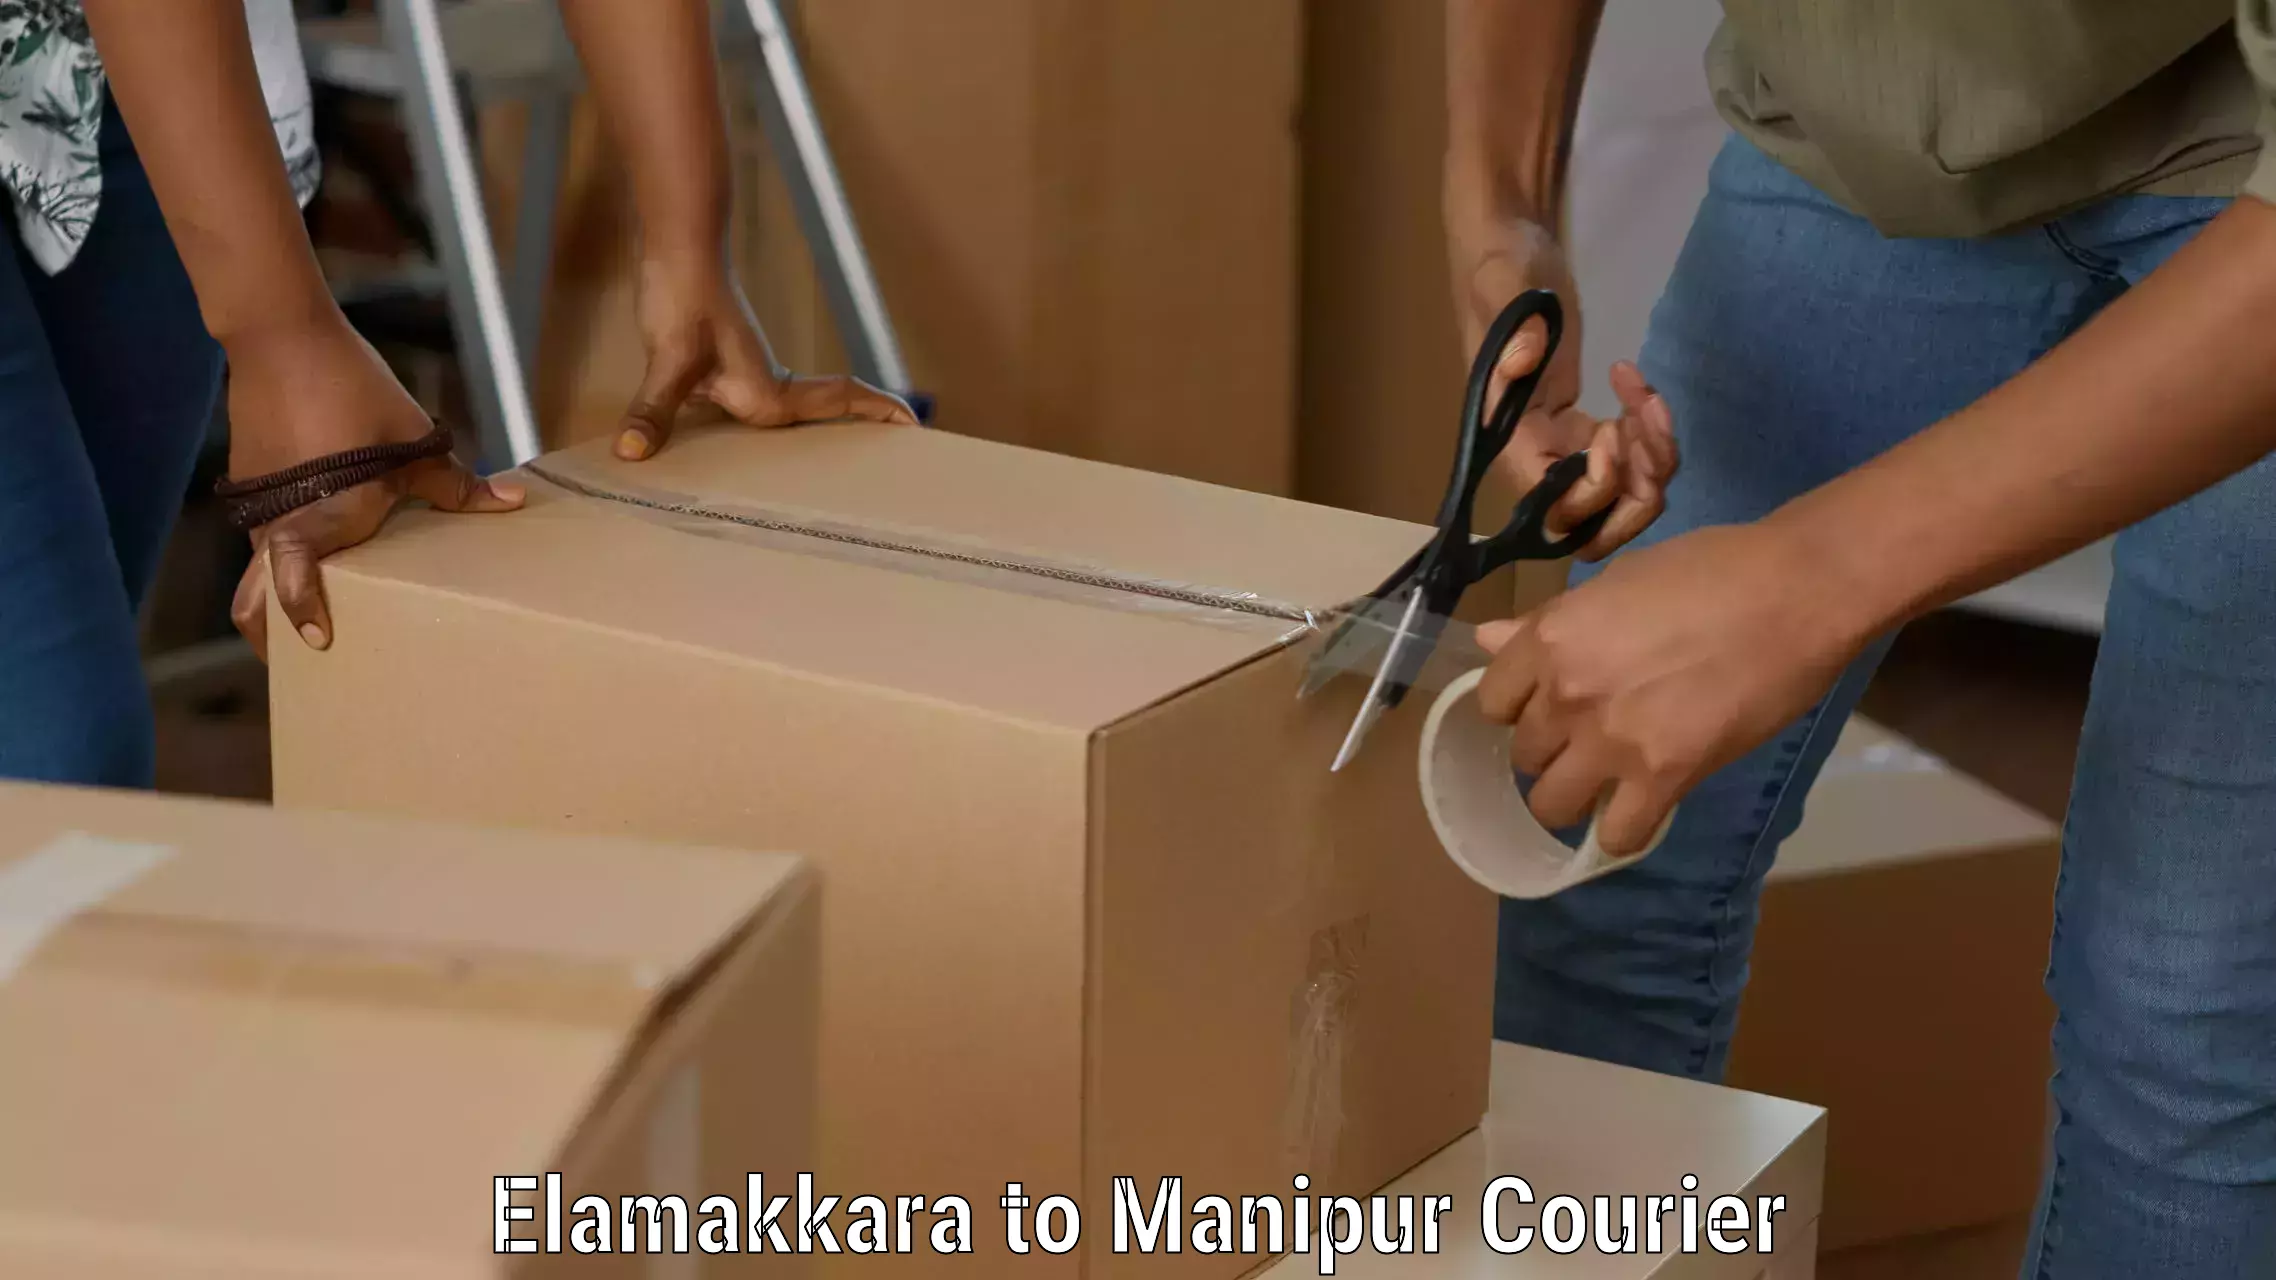 Efficient cargo services Elamakkara to Senapati